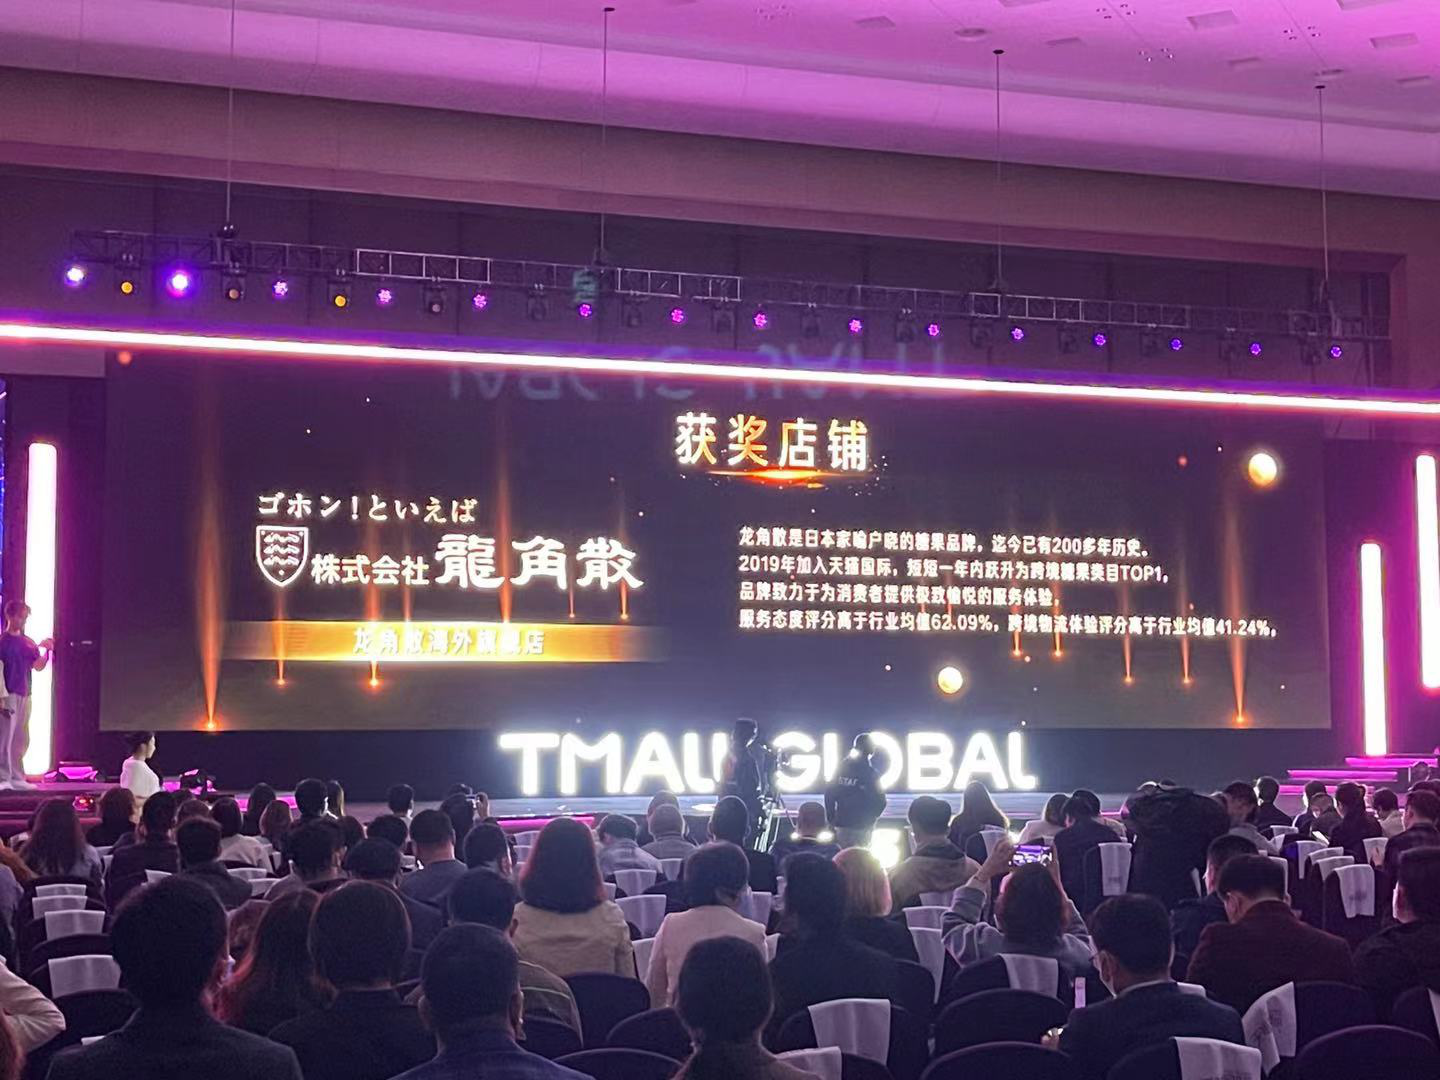 2021天猫国际首届猫斯卡颁奖盛典在杭举行  日本龙角散获“最佳用户体验奖”